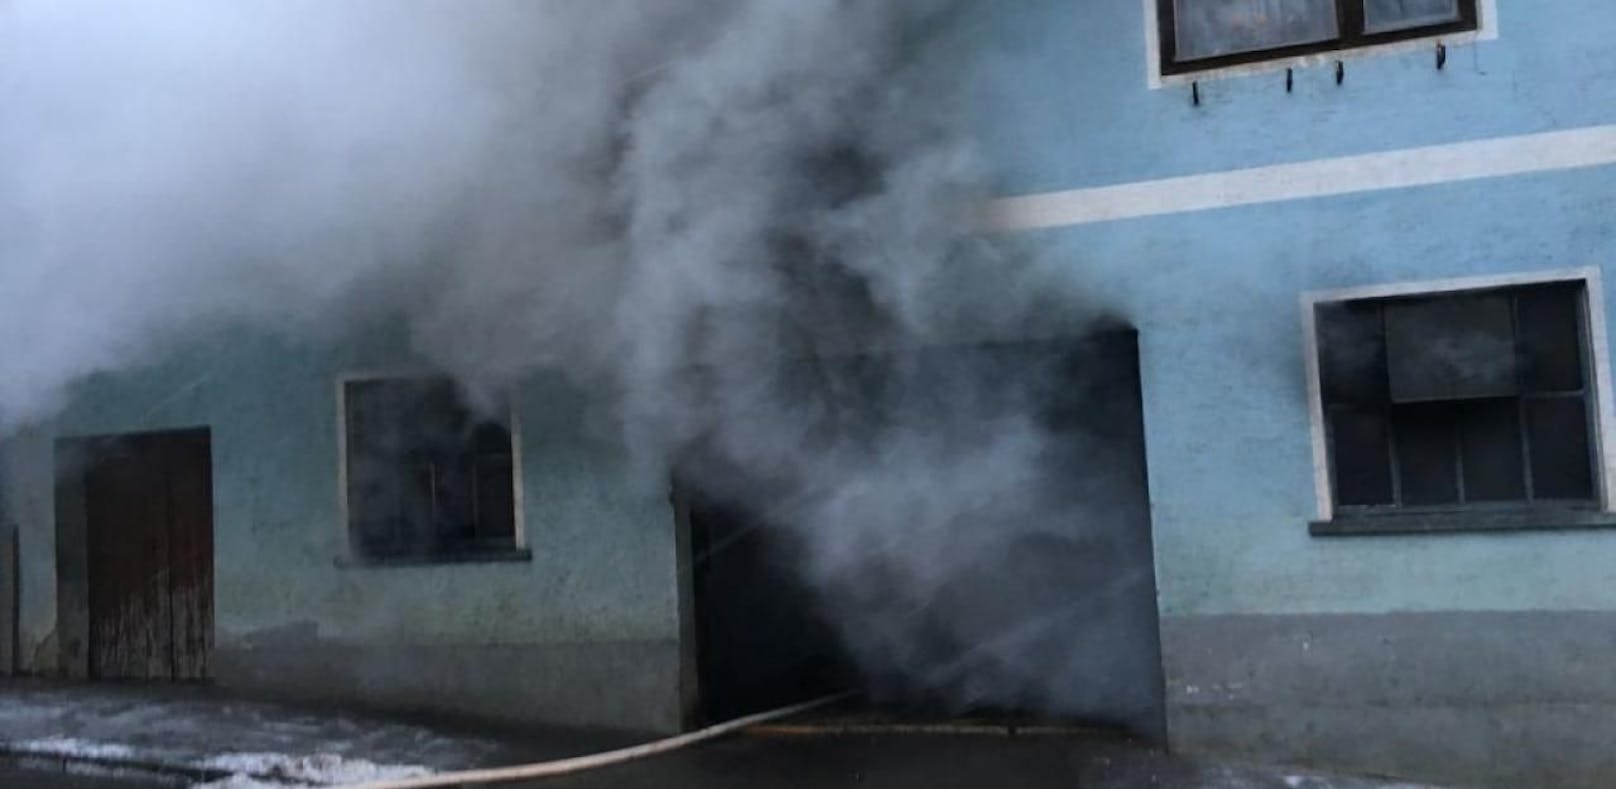 Riesige Rauchwolke wegen Brand in Heizraum